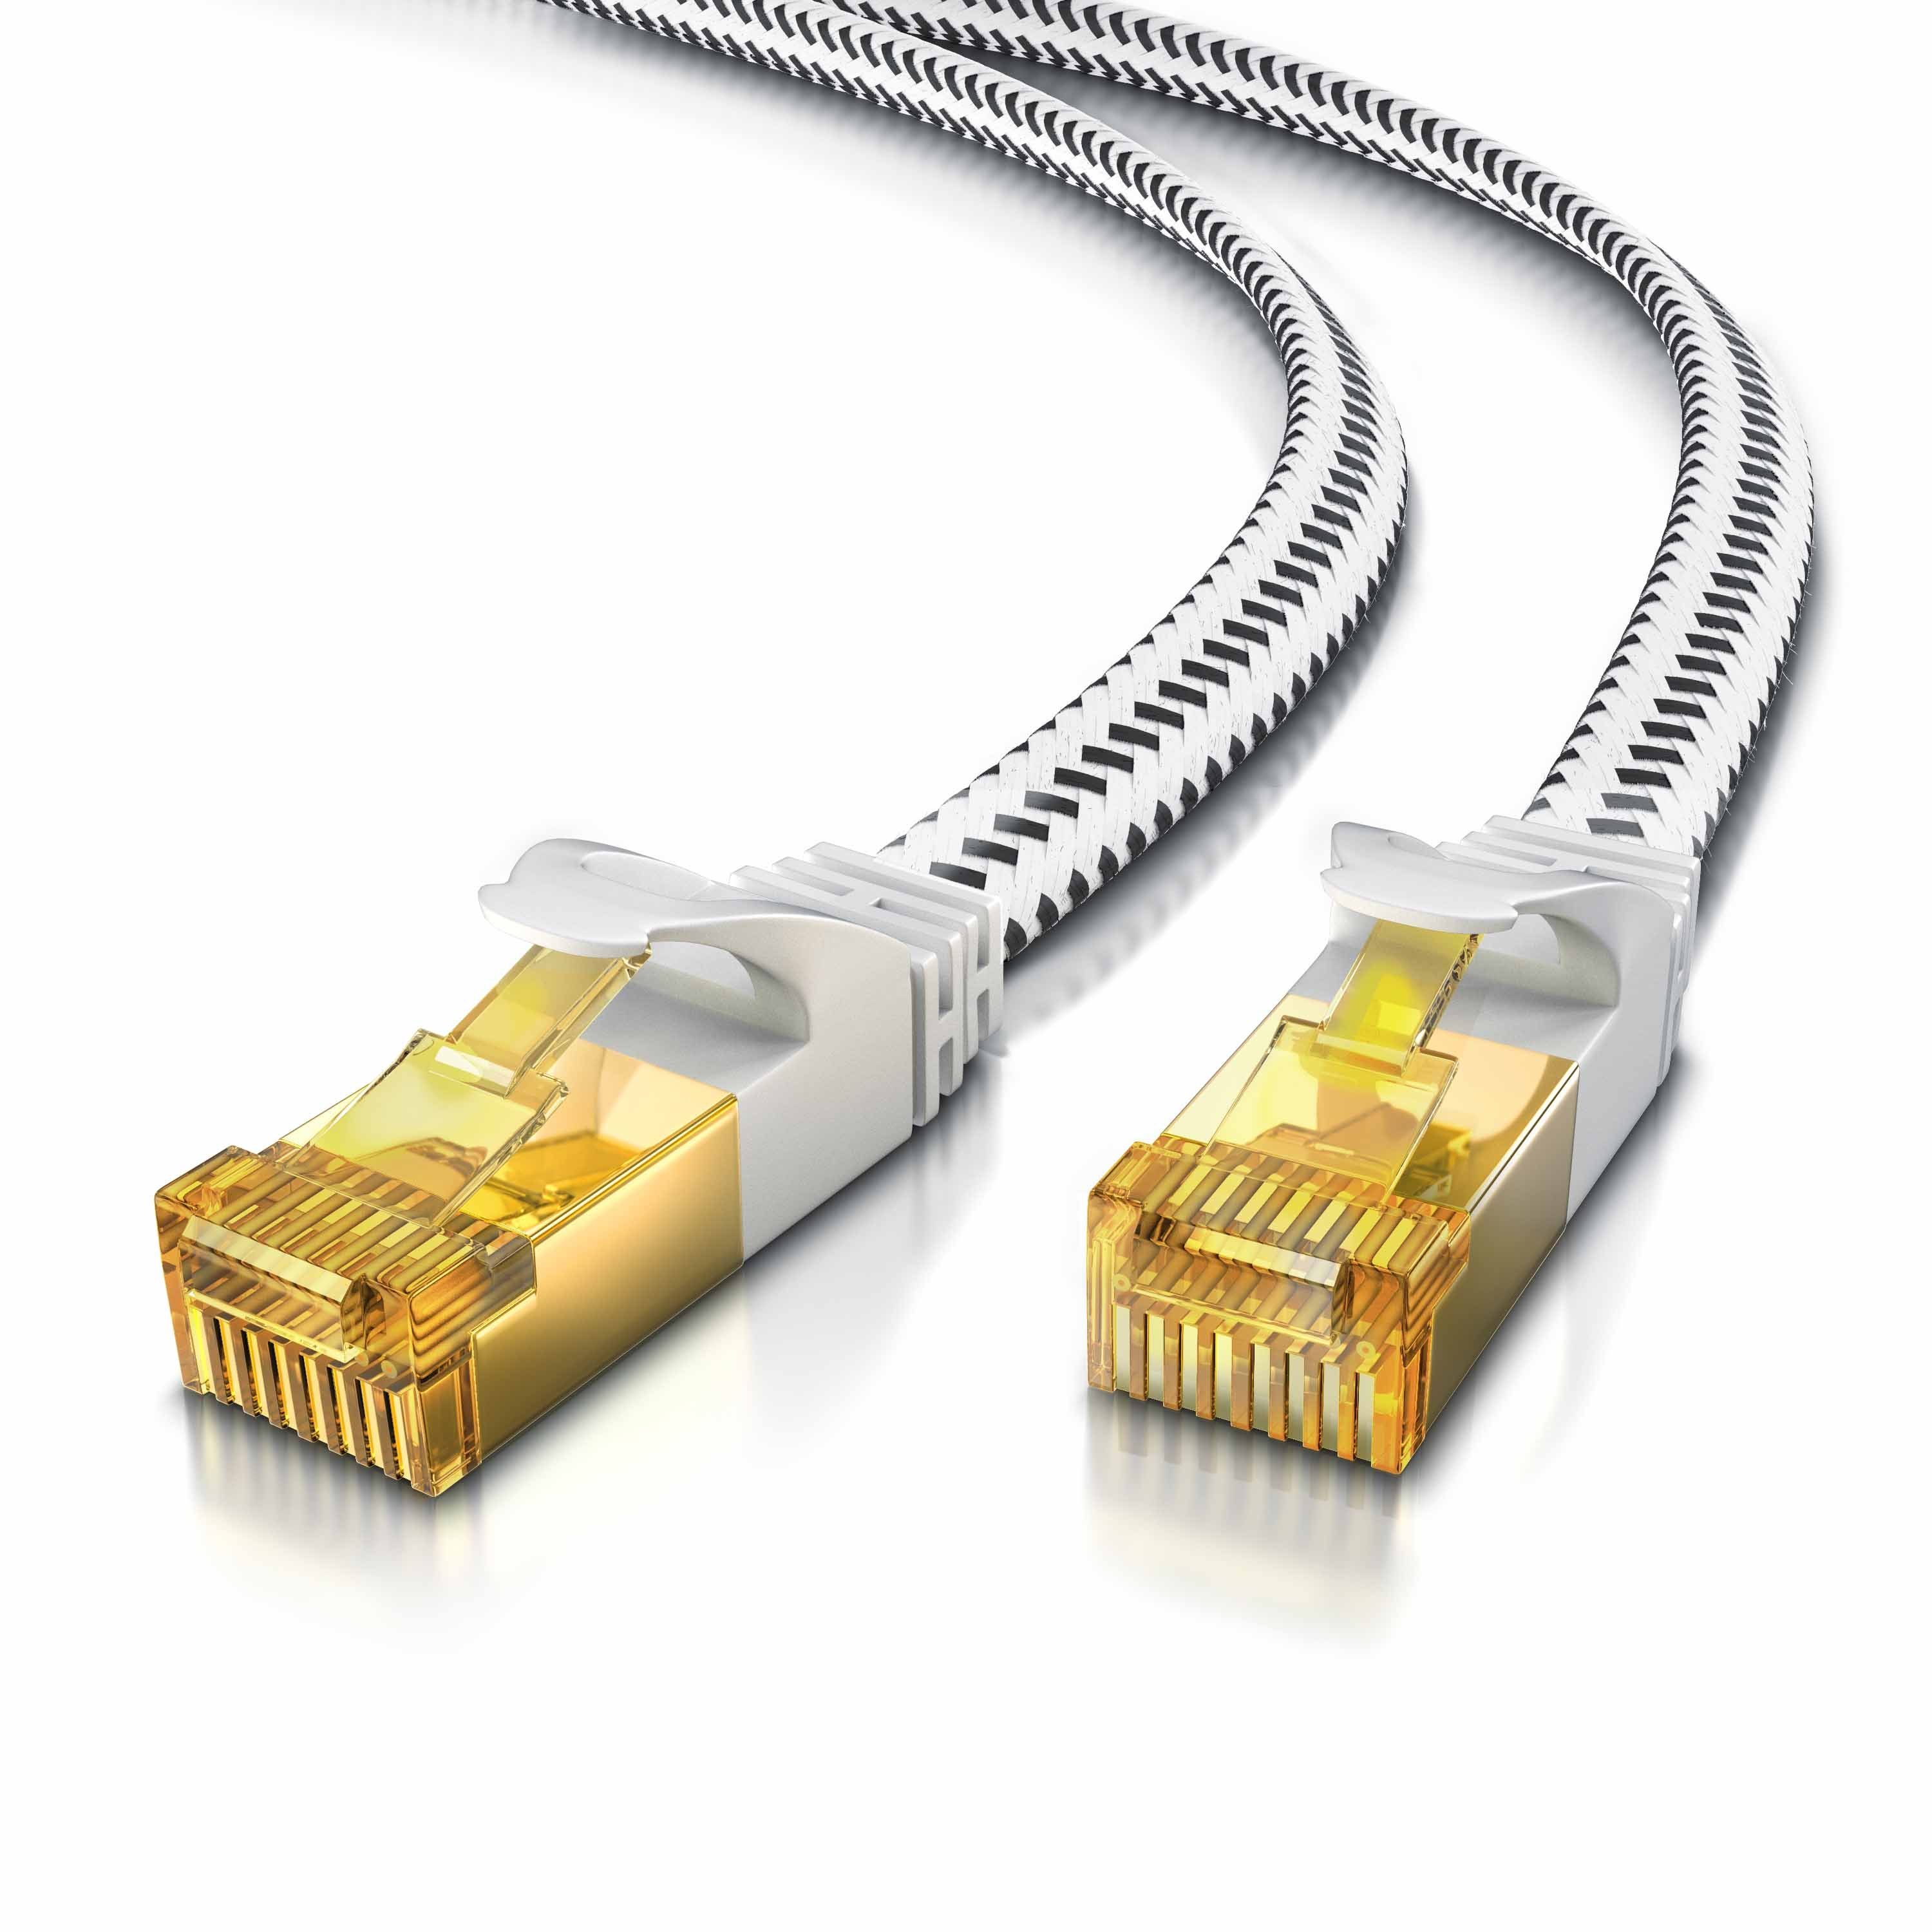 Primewire LAN-Kabel, RJ45, RJ45 Stecker auf RJ45 Stecker (100 cm),  Patchkabel CAT7 flach, 10Gbit/s, U/FTP PIMF, Netzwerkkabel - 1m